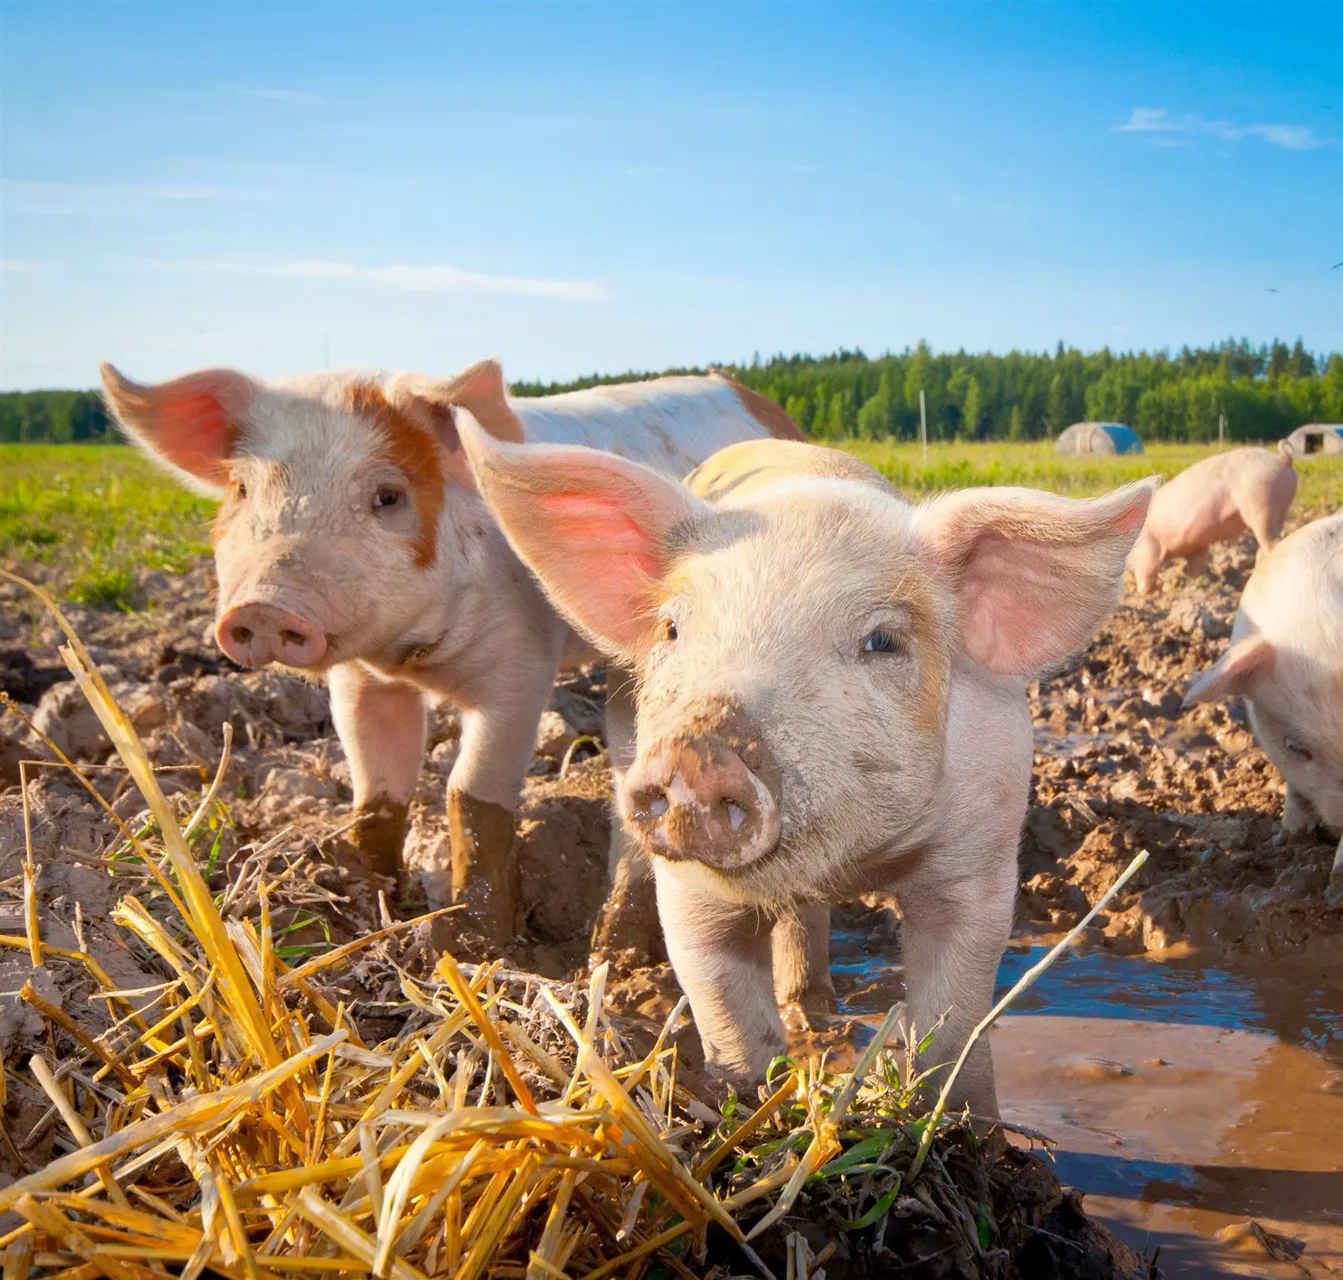 Piglets on a farm